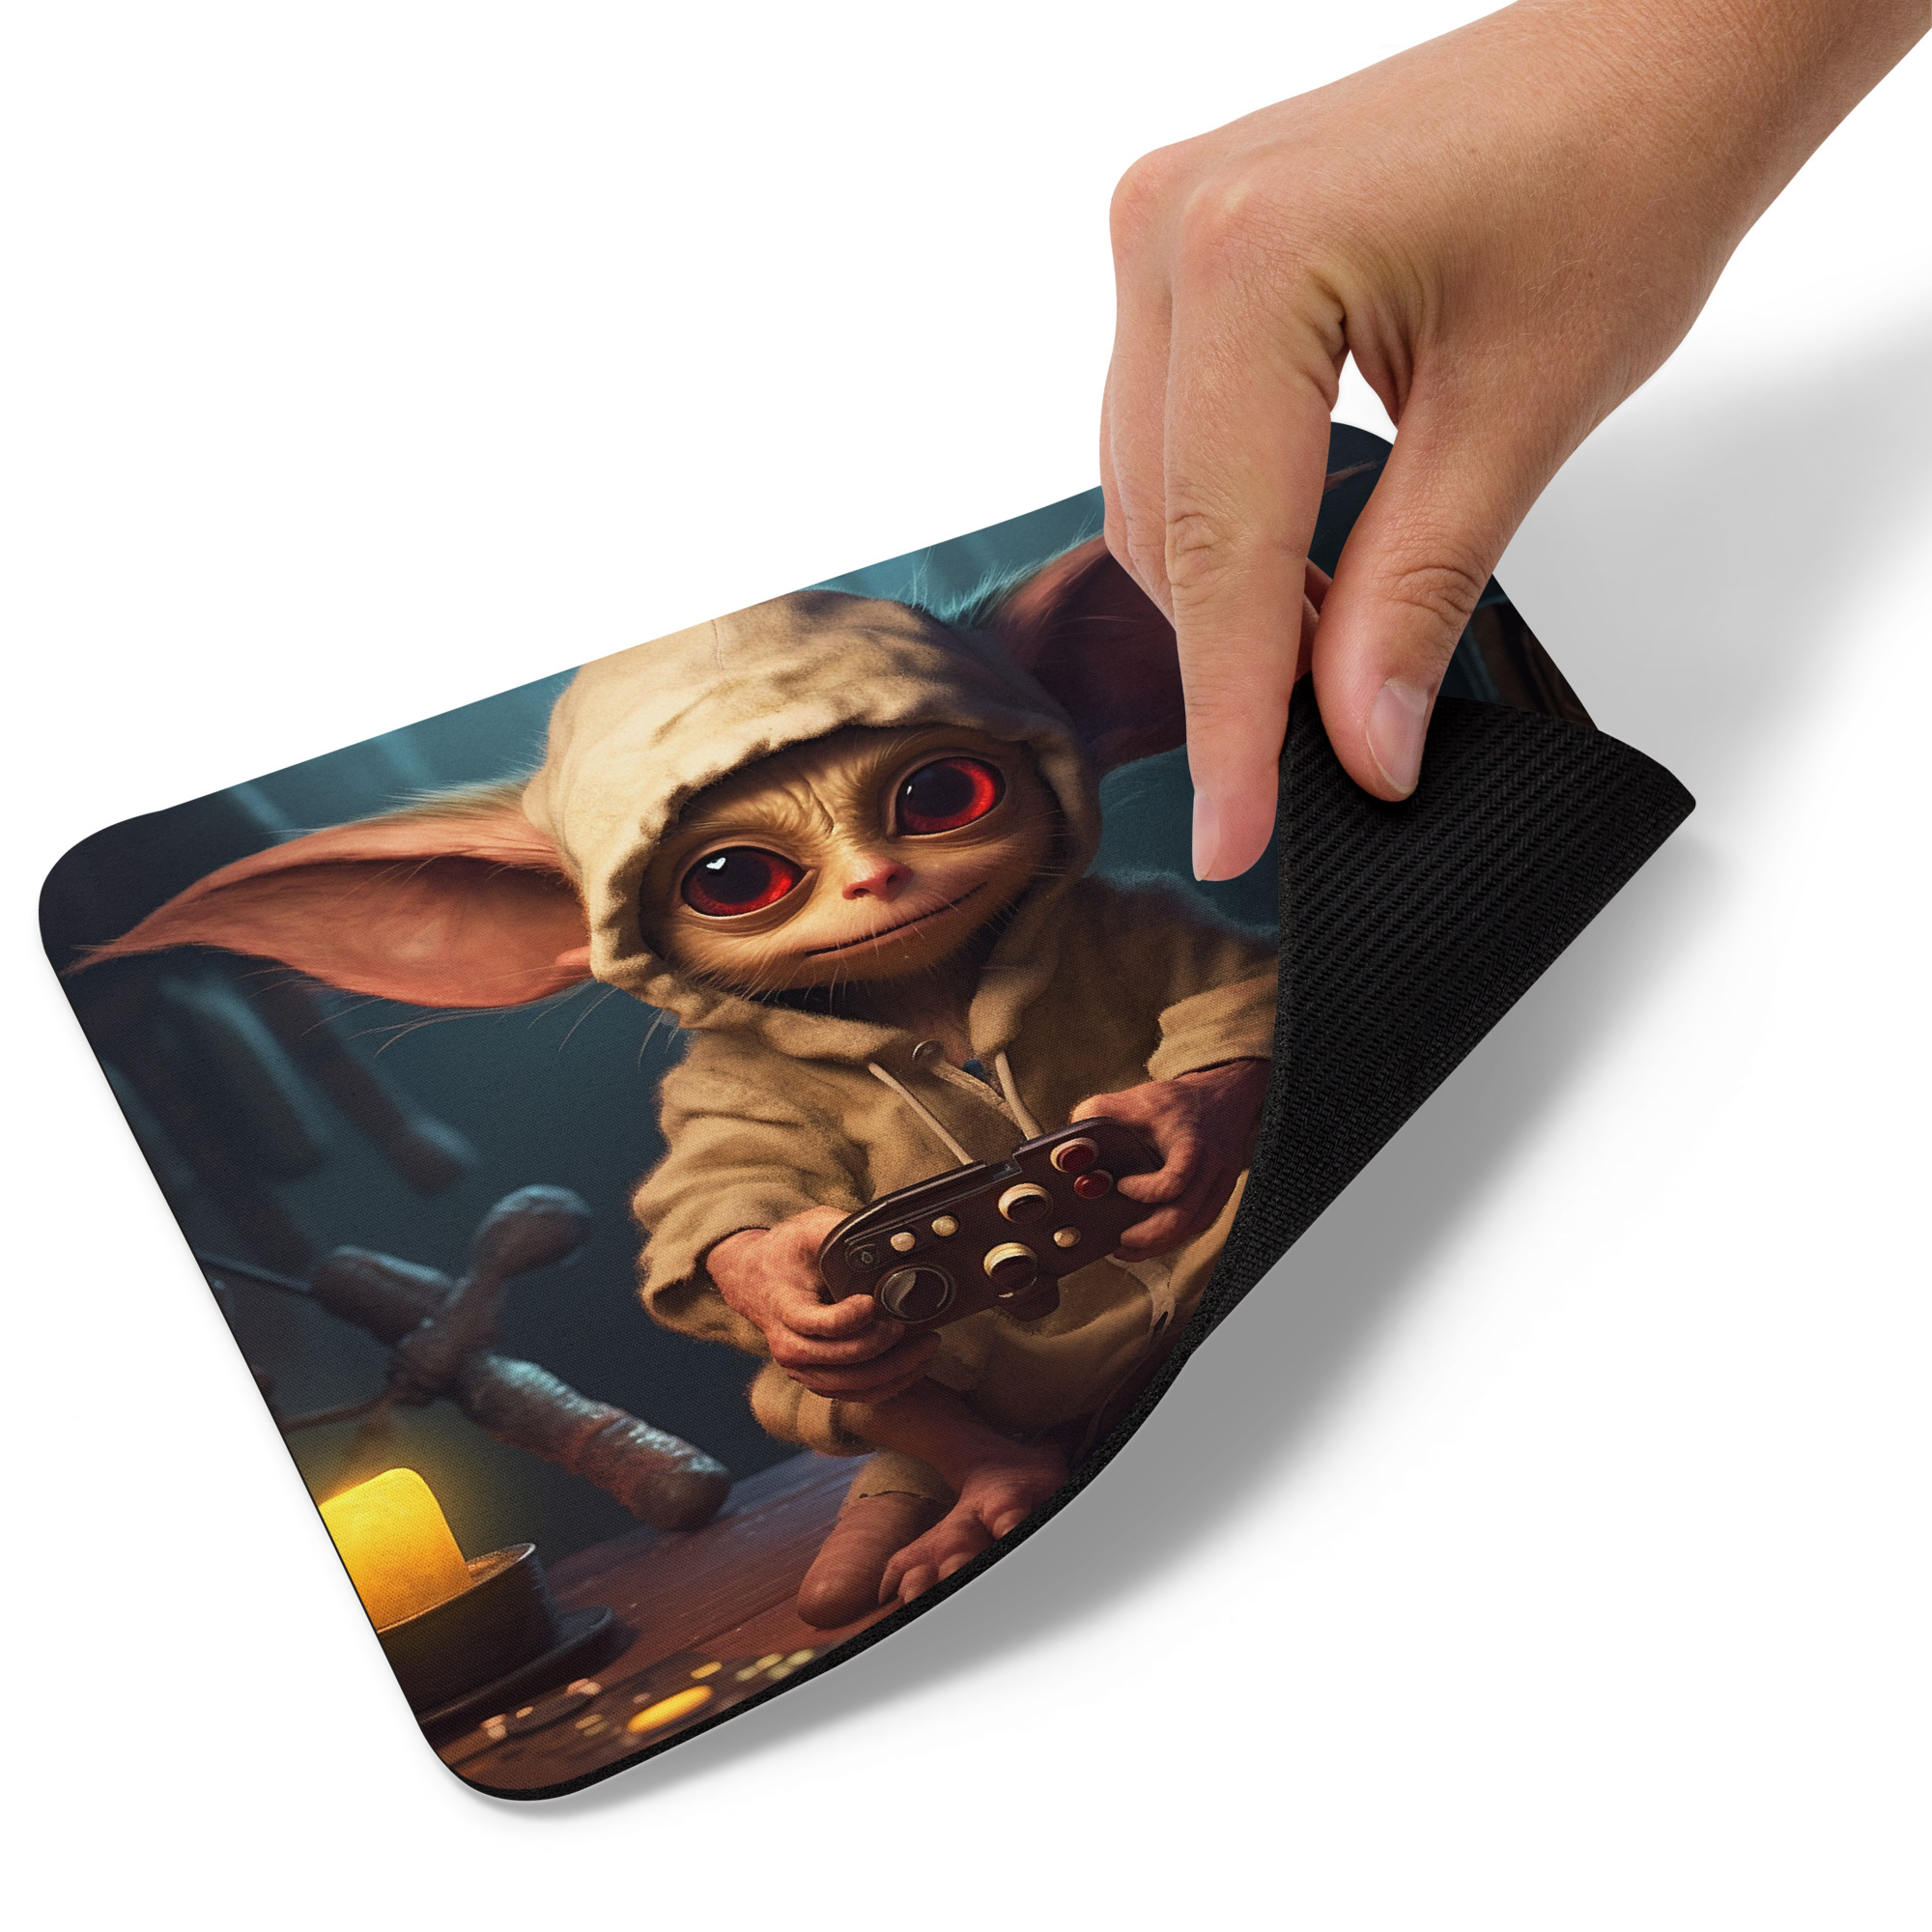 Little Gremlin Gamer | Fantasy Artwork | Mouse pad